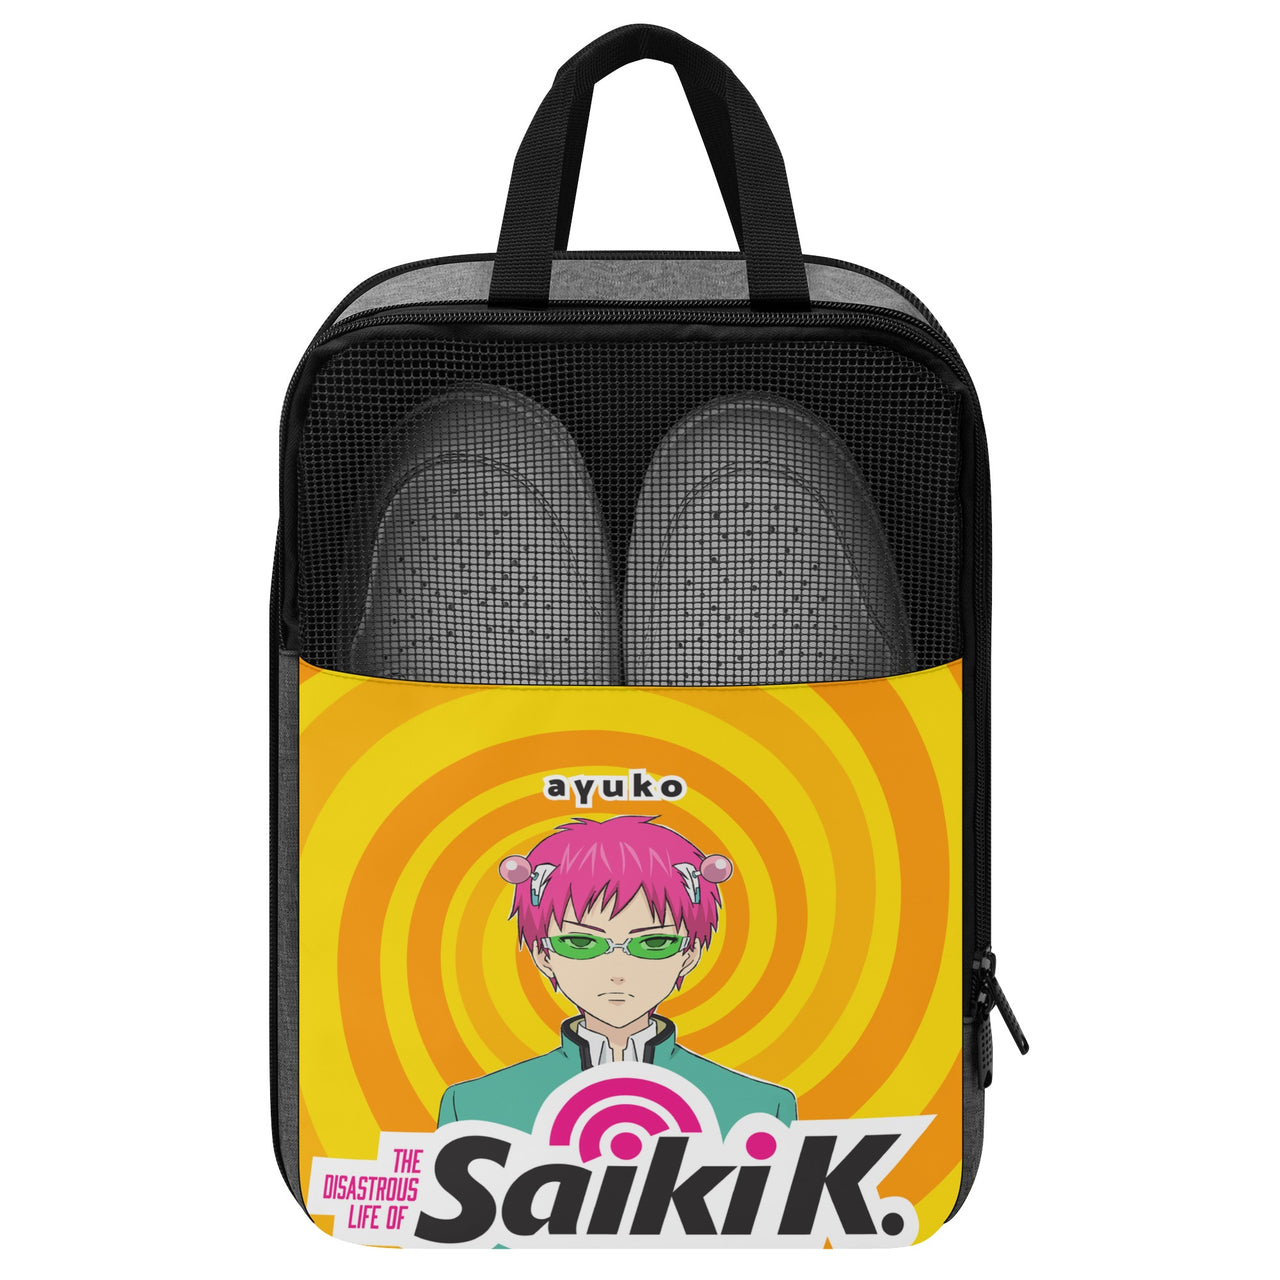 Die desaströse Life of Saiki K Anime-Schuhtasche